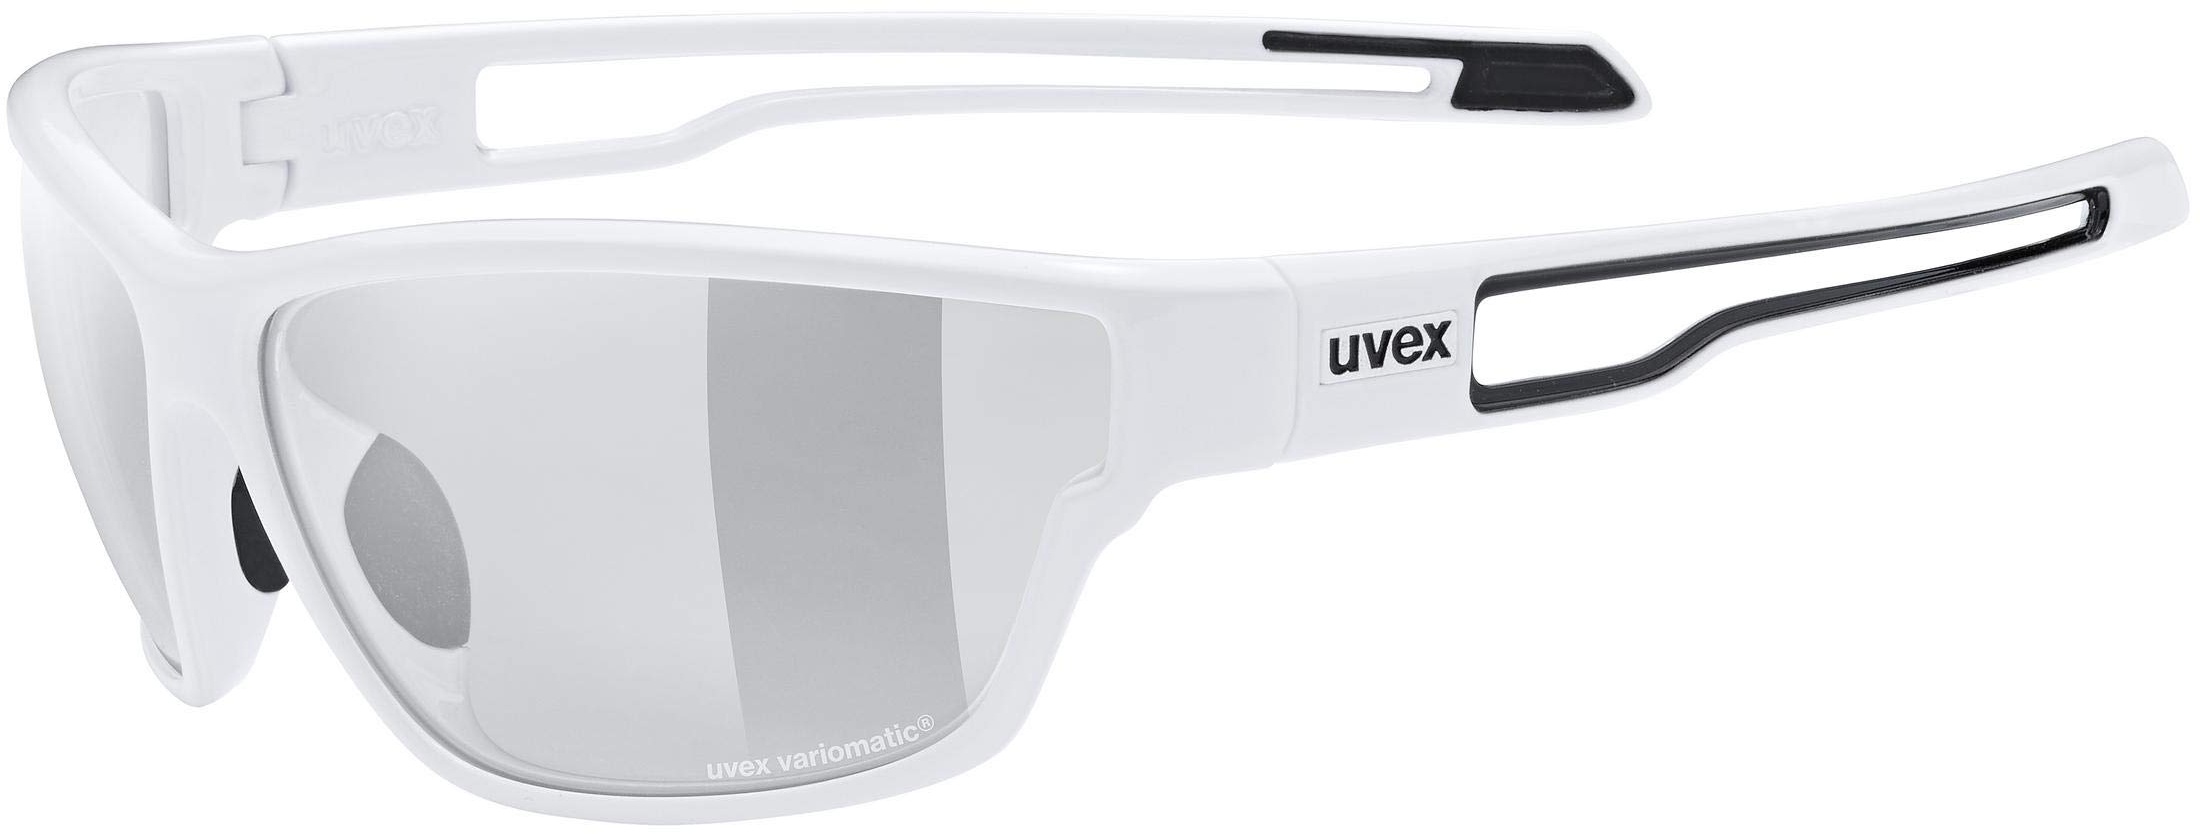 uvex sportstyle 806 V - Outdoorbrille für Damen und Herren - selbsttönend - beschlagfrei - white/smoke - one size